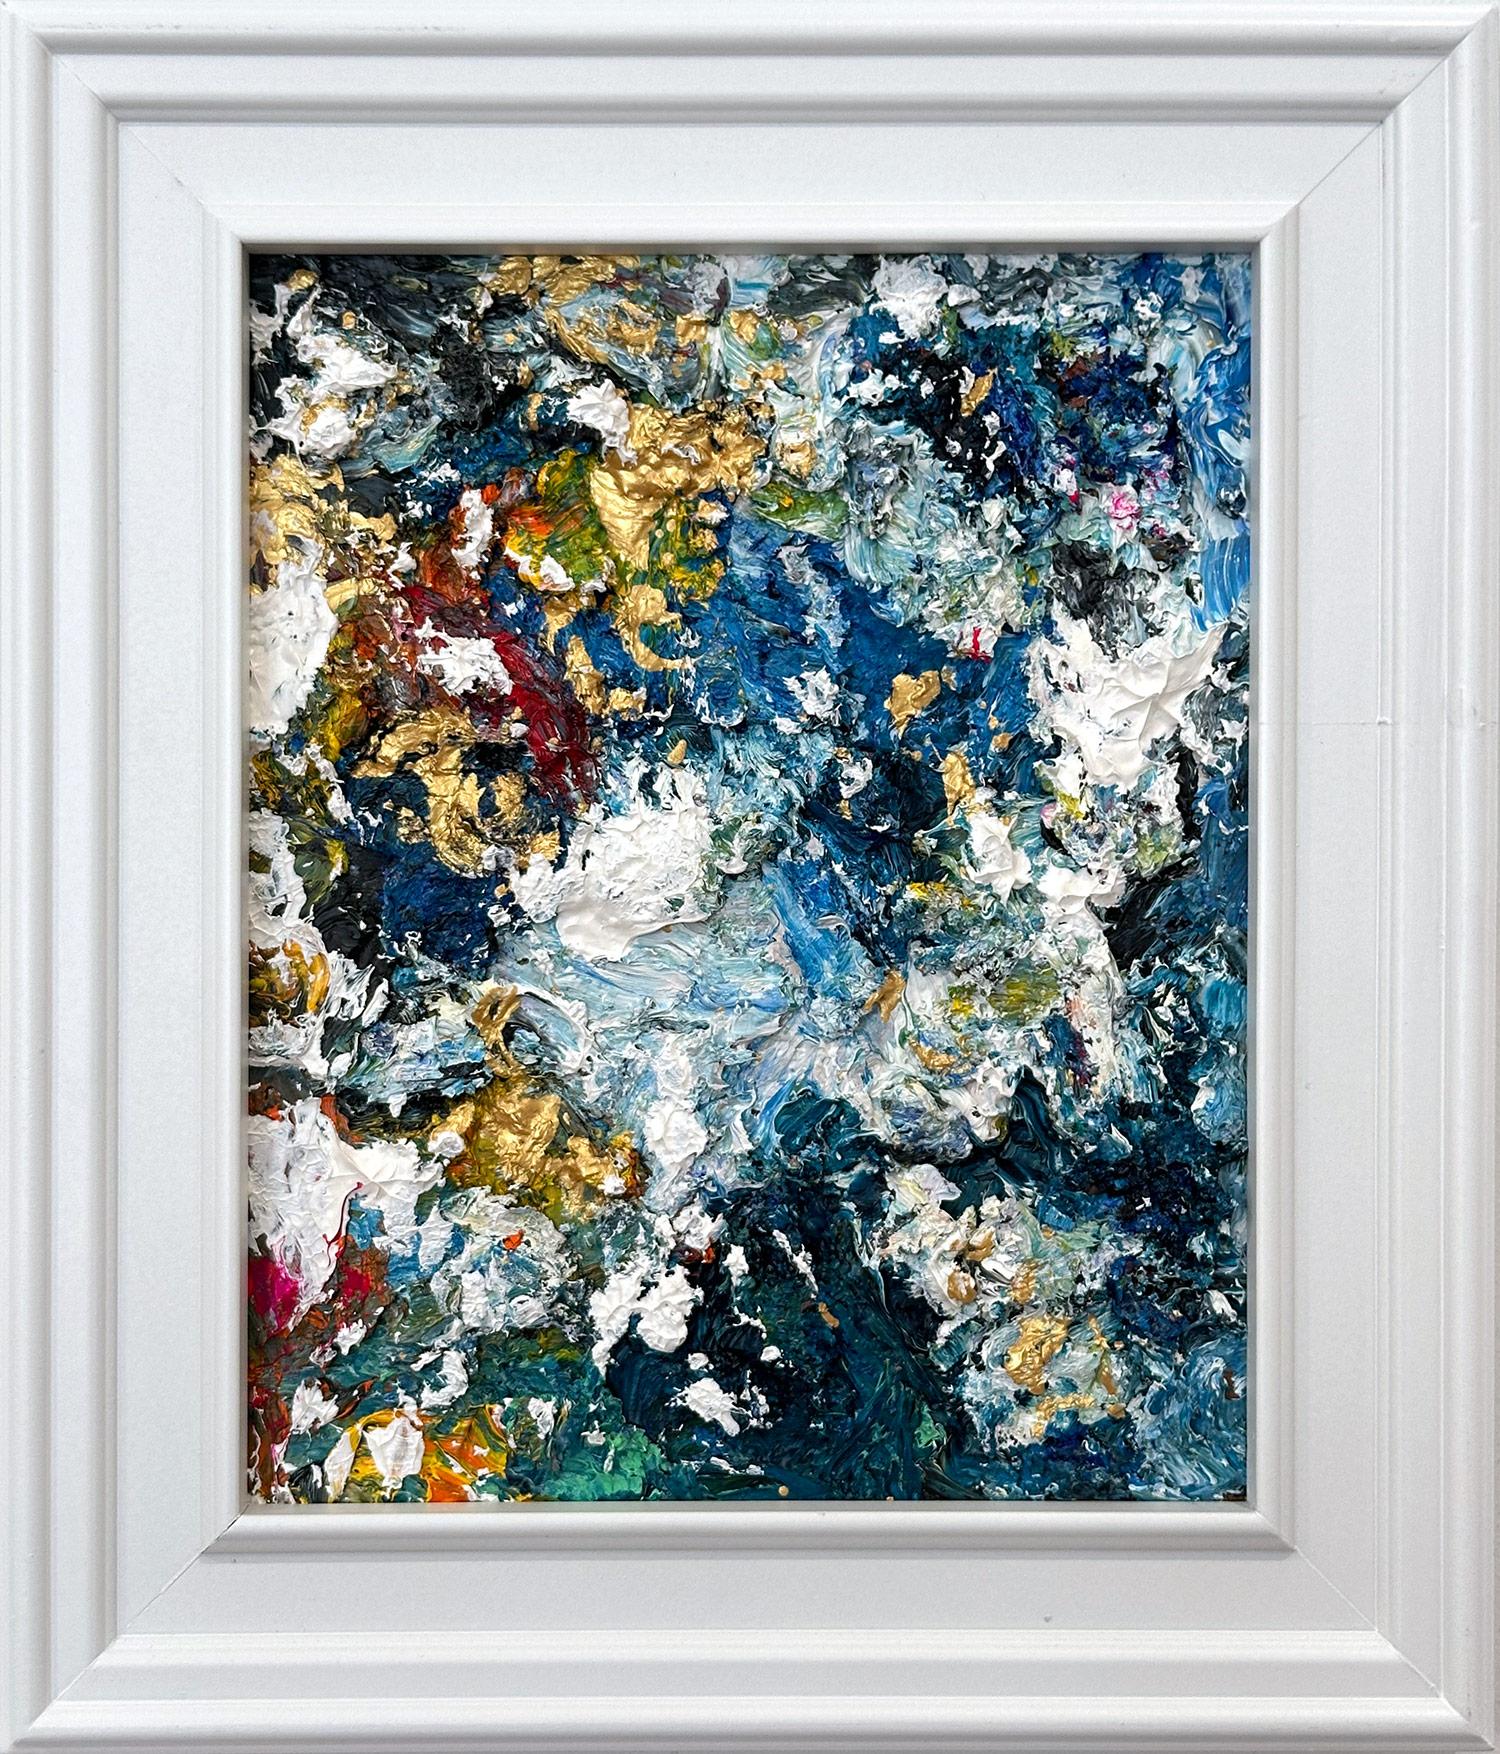 Abstract Painting Cindy Shaoul - "Dream Come True" Peinture contemporaine colorée à l'huile et à l'or sur panneau de bois encadrée